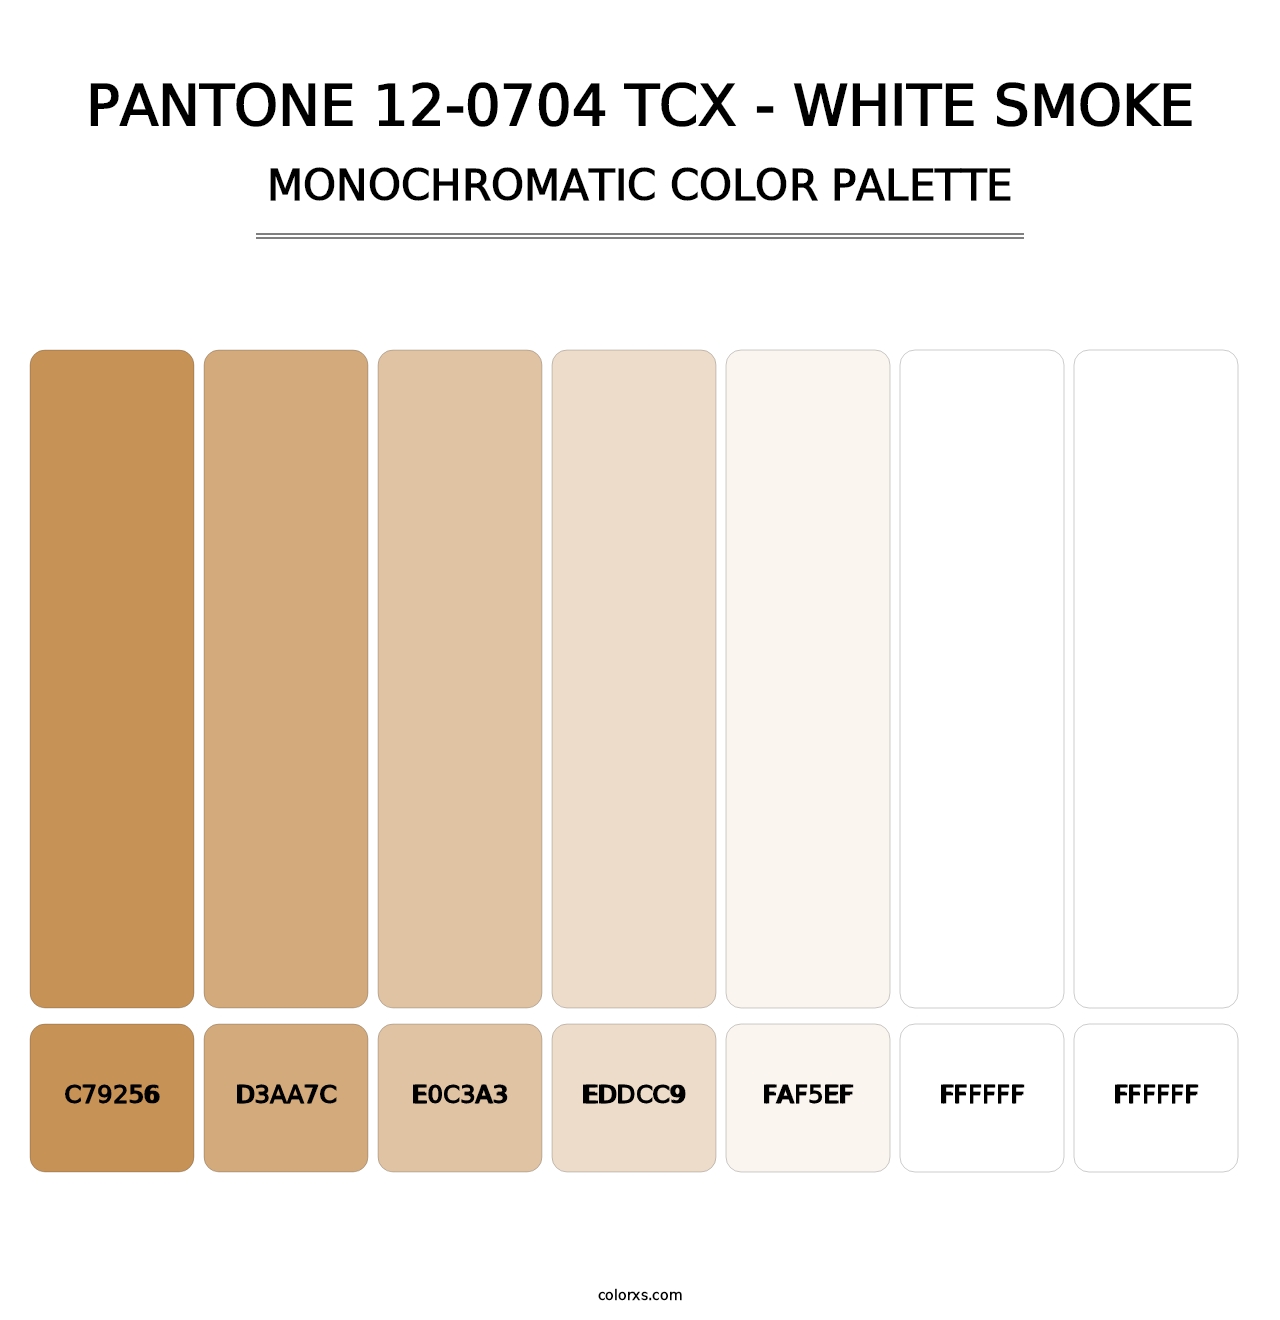 PANTONE 12-0704 TCX - White Smoke - Monochromatic Color Palette